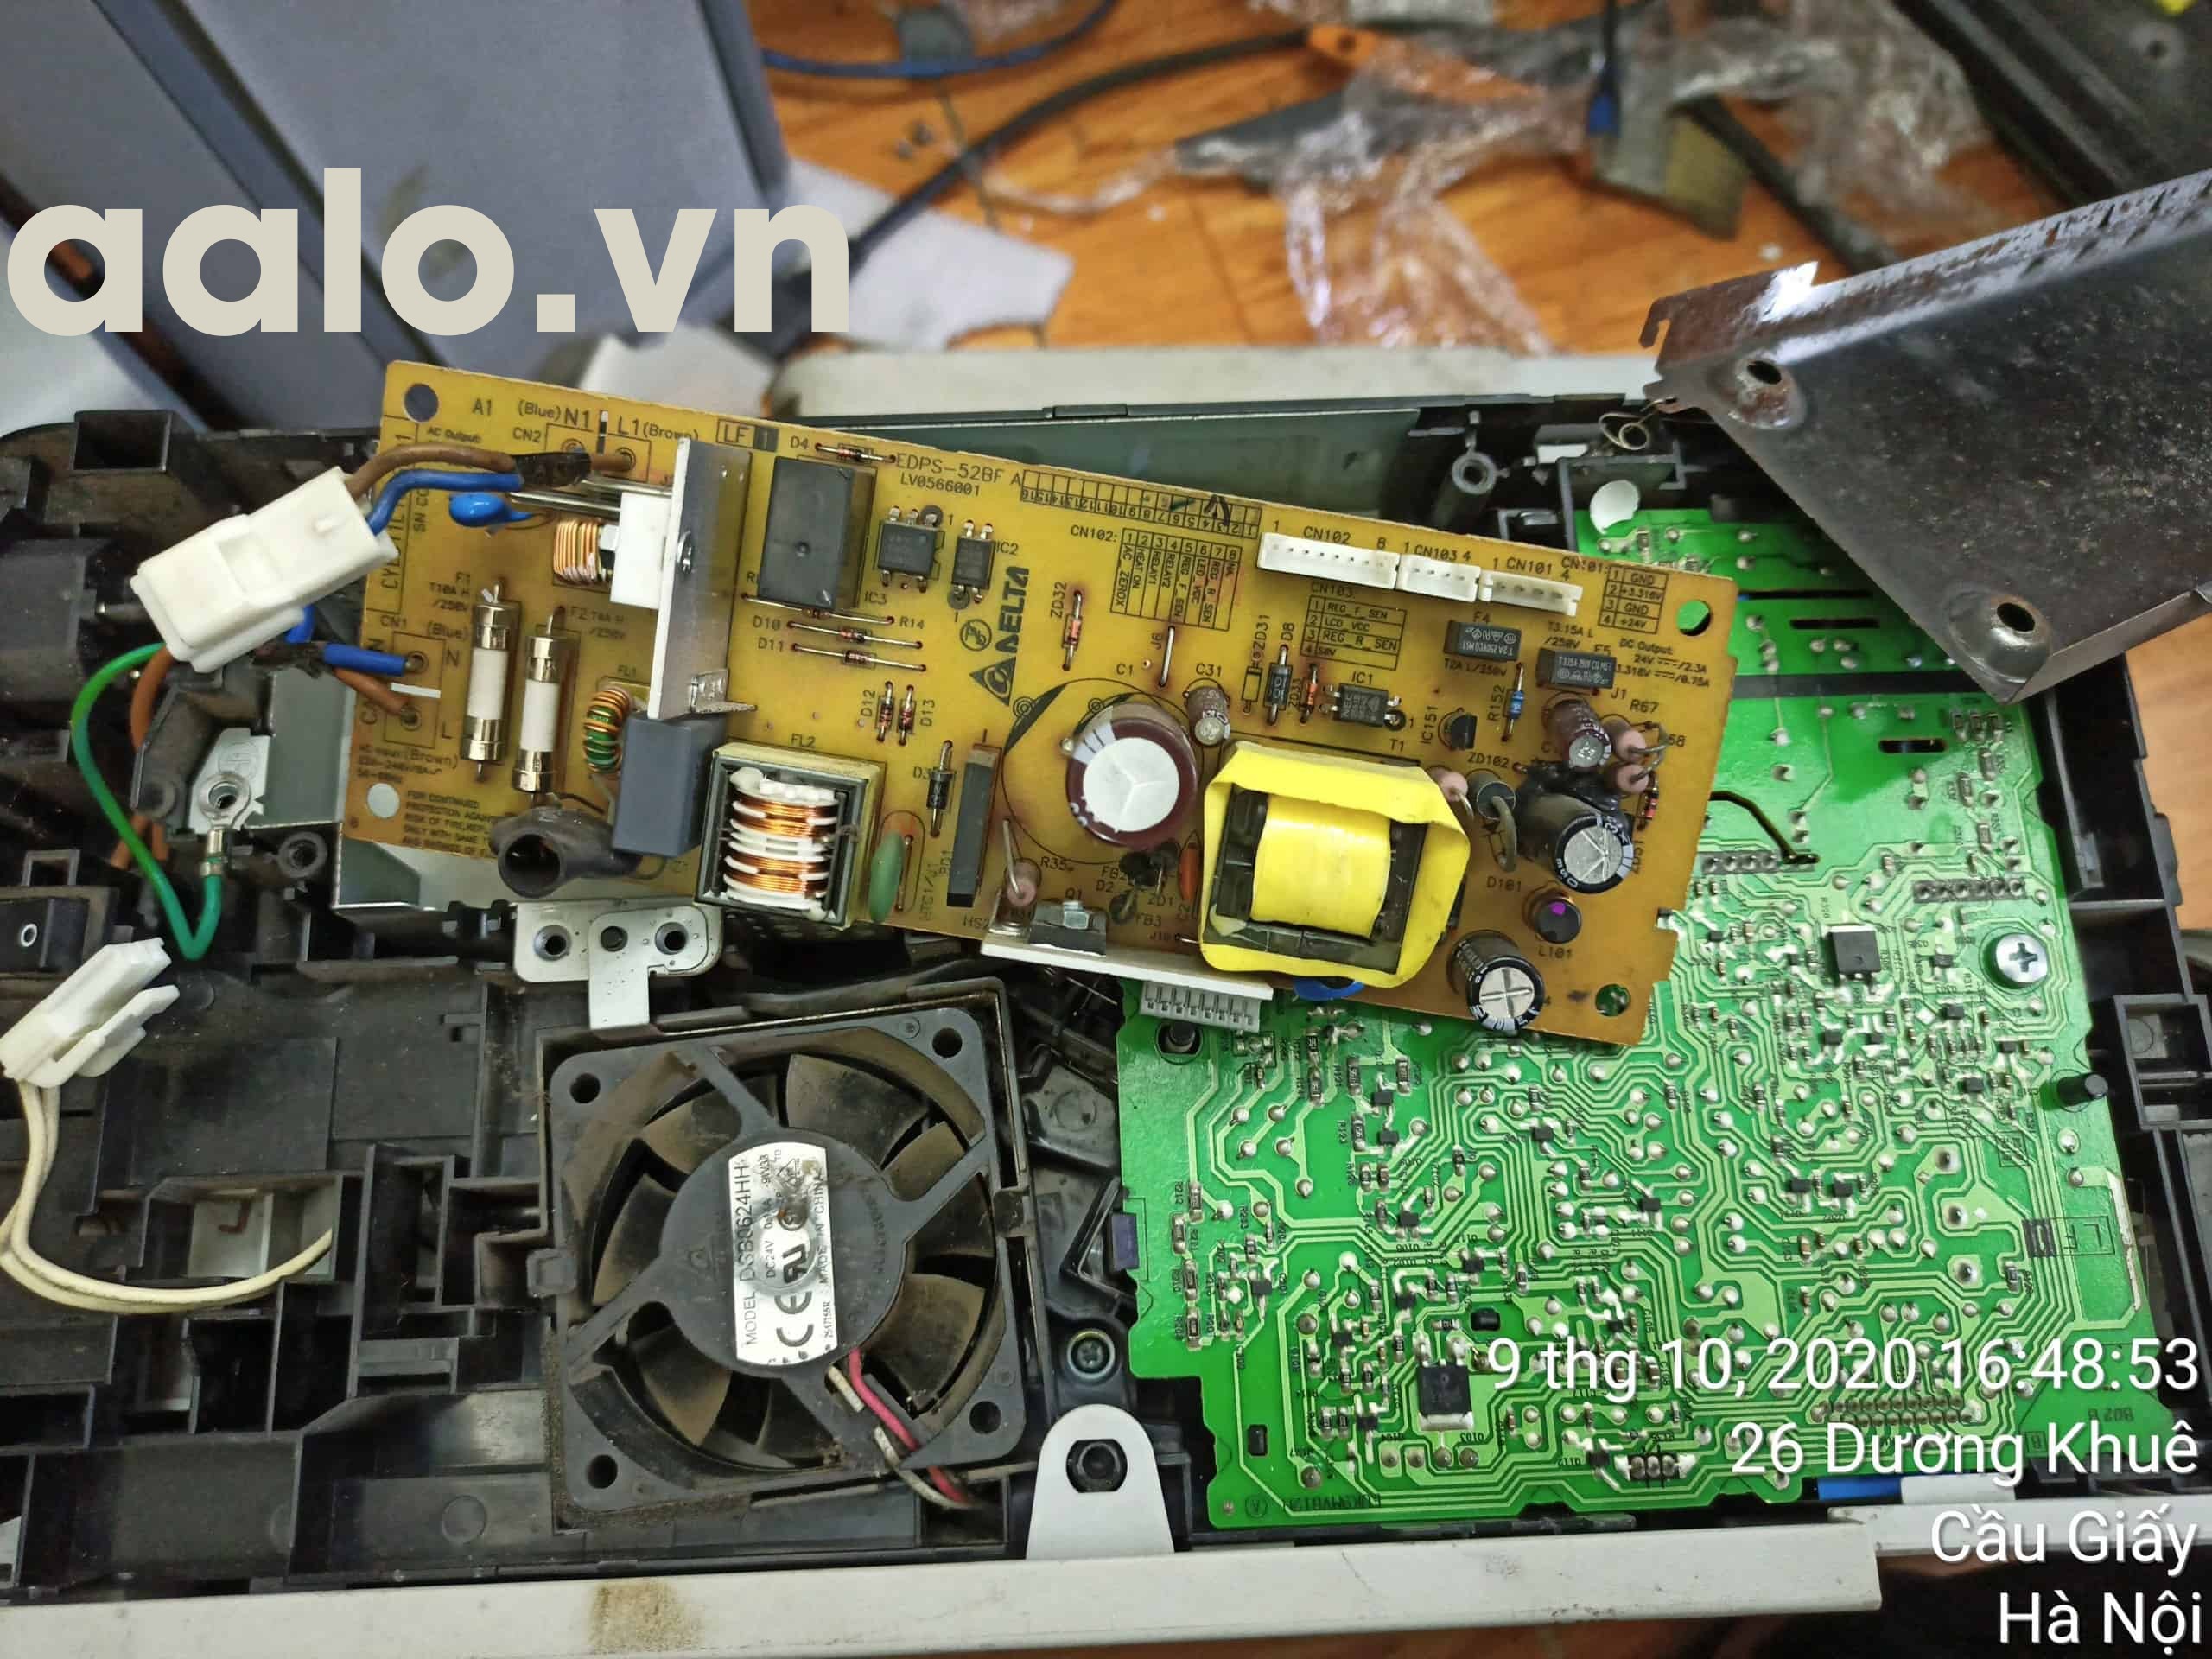  Sửa Máy in Laser Brother HL-2130 lỗi không lên nguồn - AALO.VN